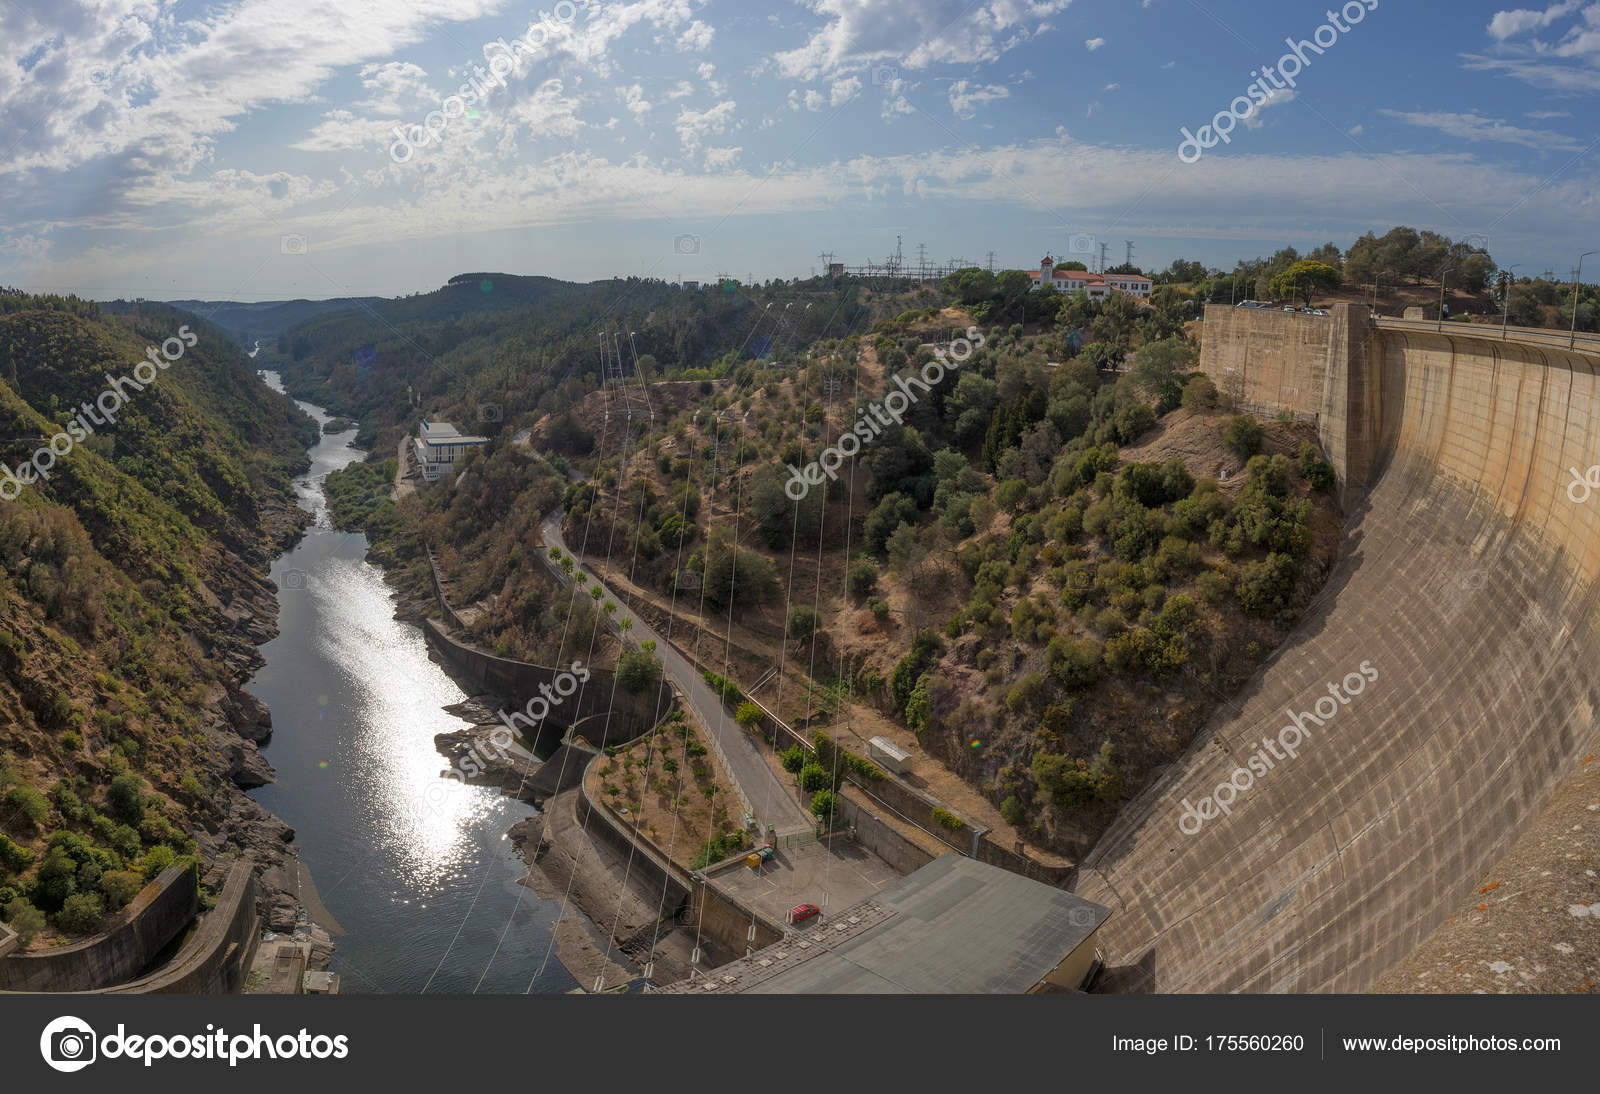 Presa hidroeléctrica de Castelo de Bode. Portugal — Foto ...